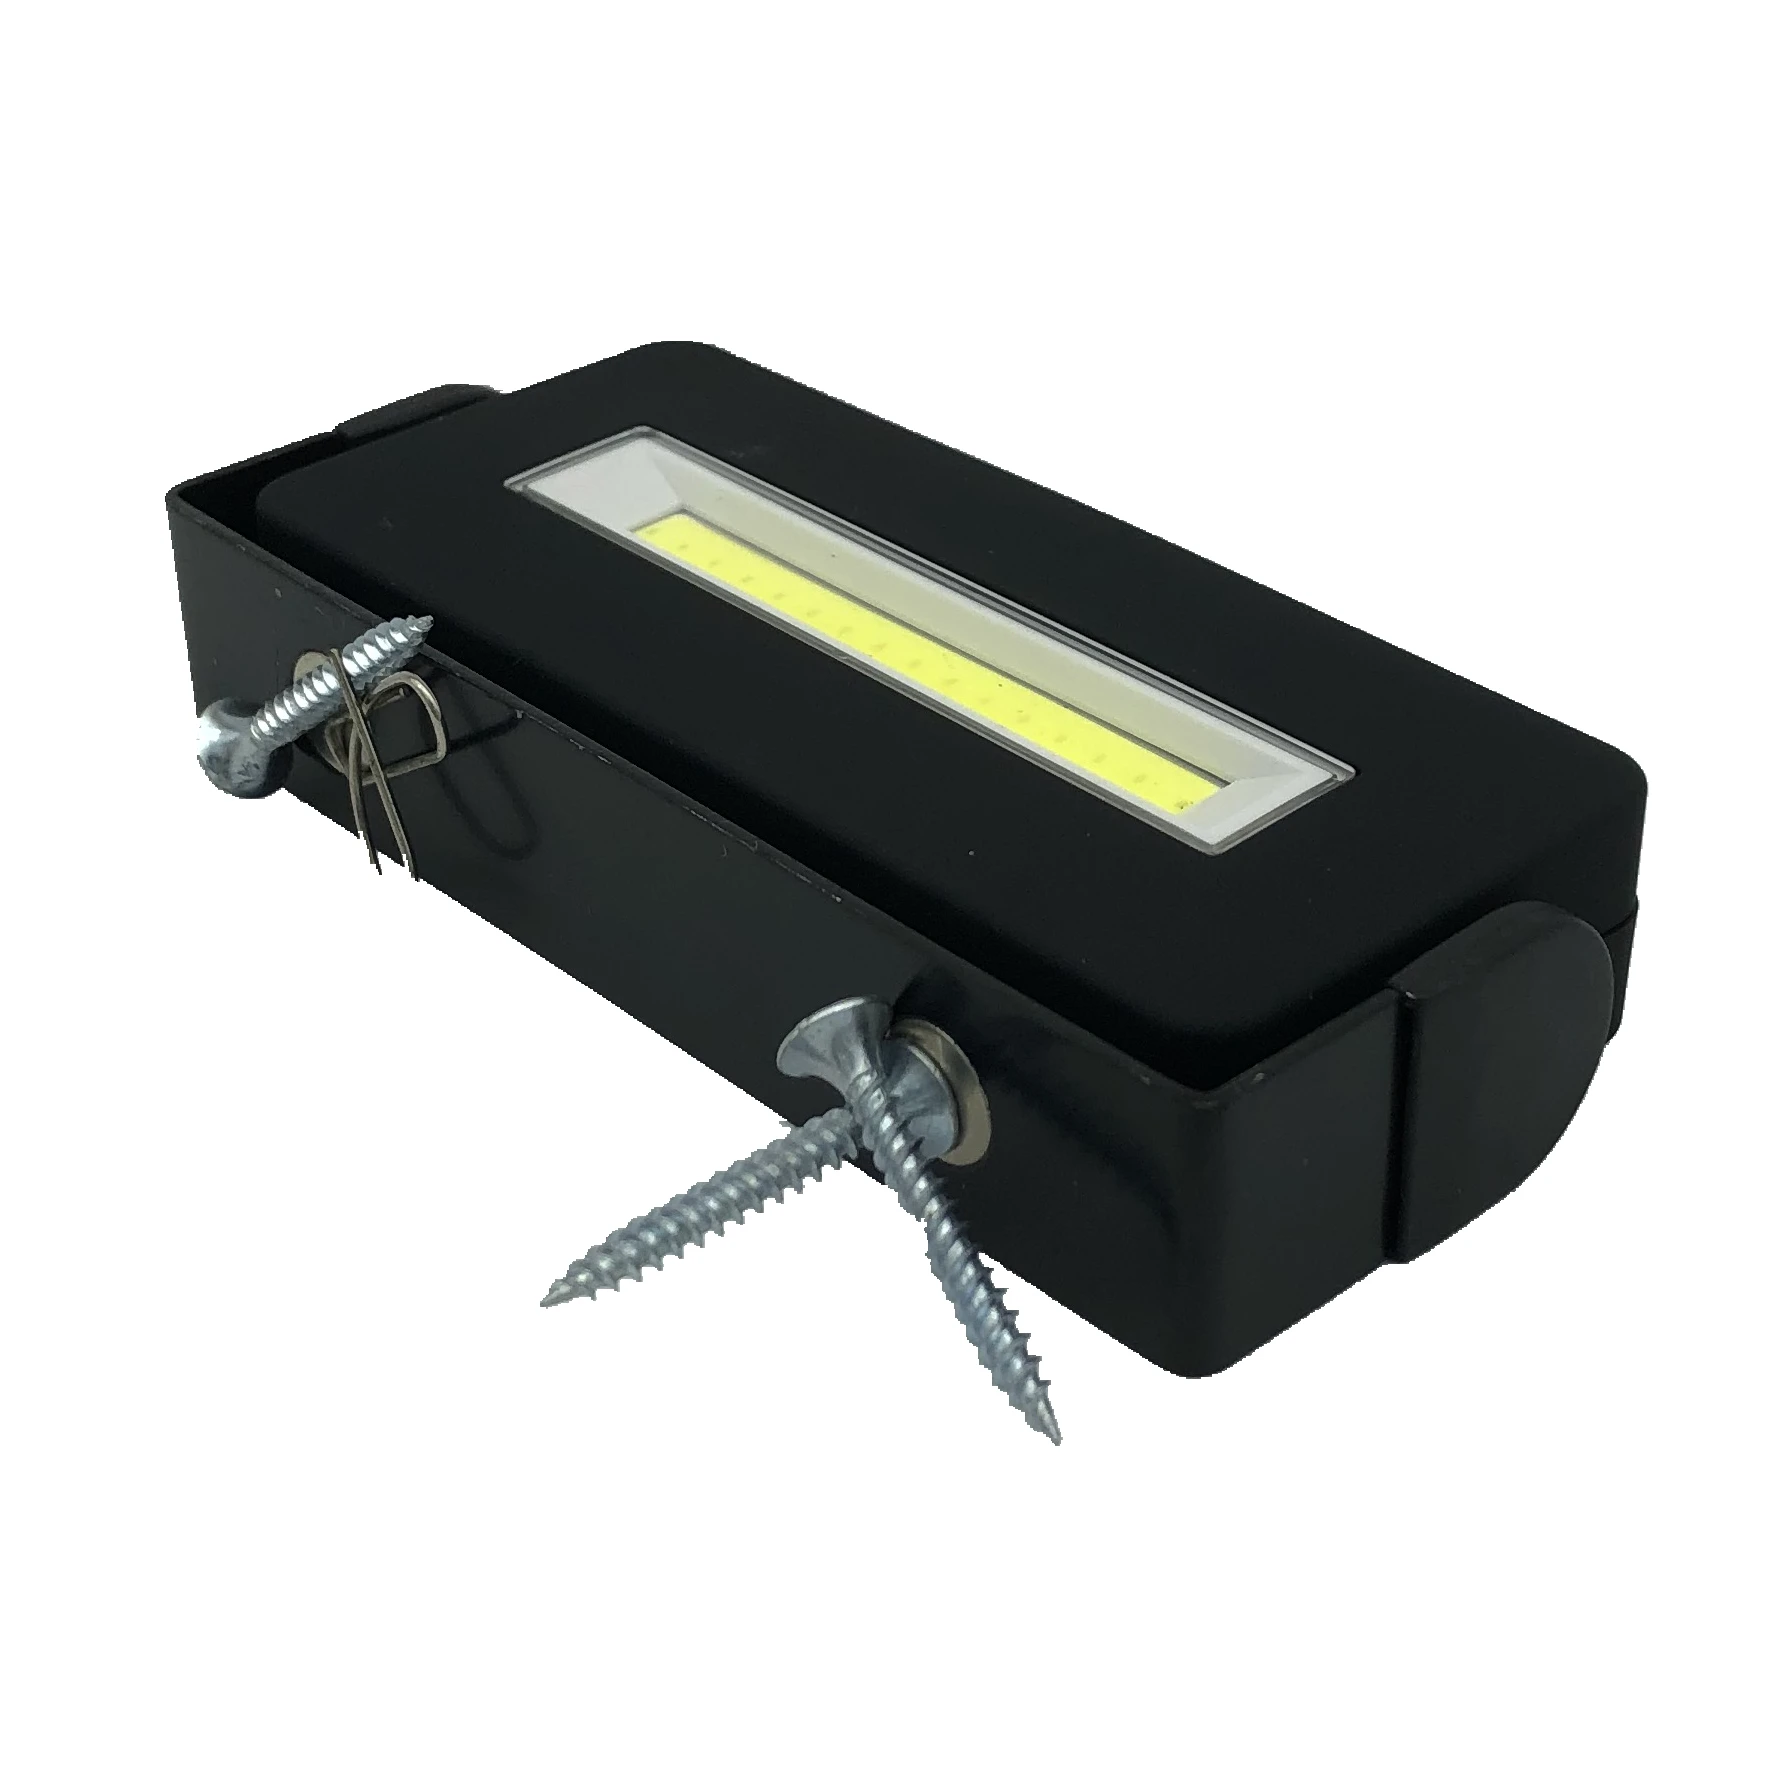 MINGRAY портативный светодиодный светильник мини размер aaa батарея Магнитная вращающаяся подставка для кемпинга рыбалки DIY ремонт автомобиля